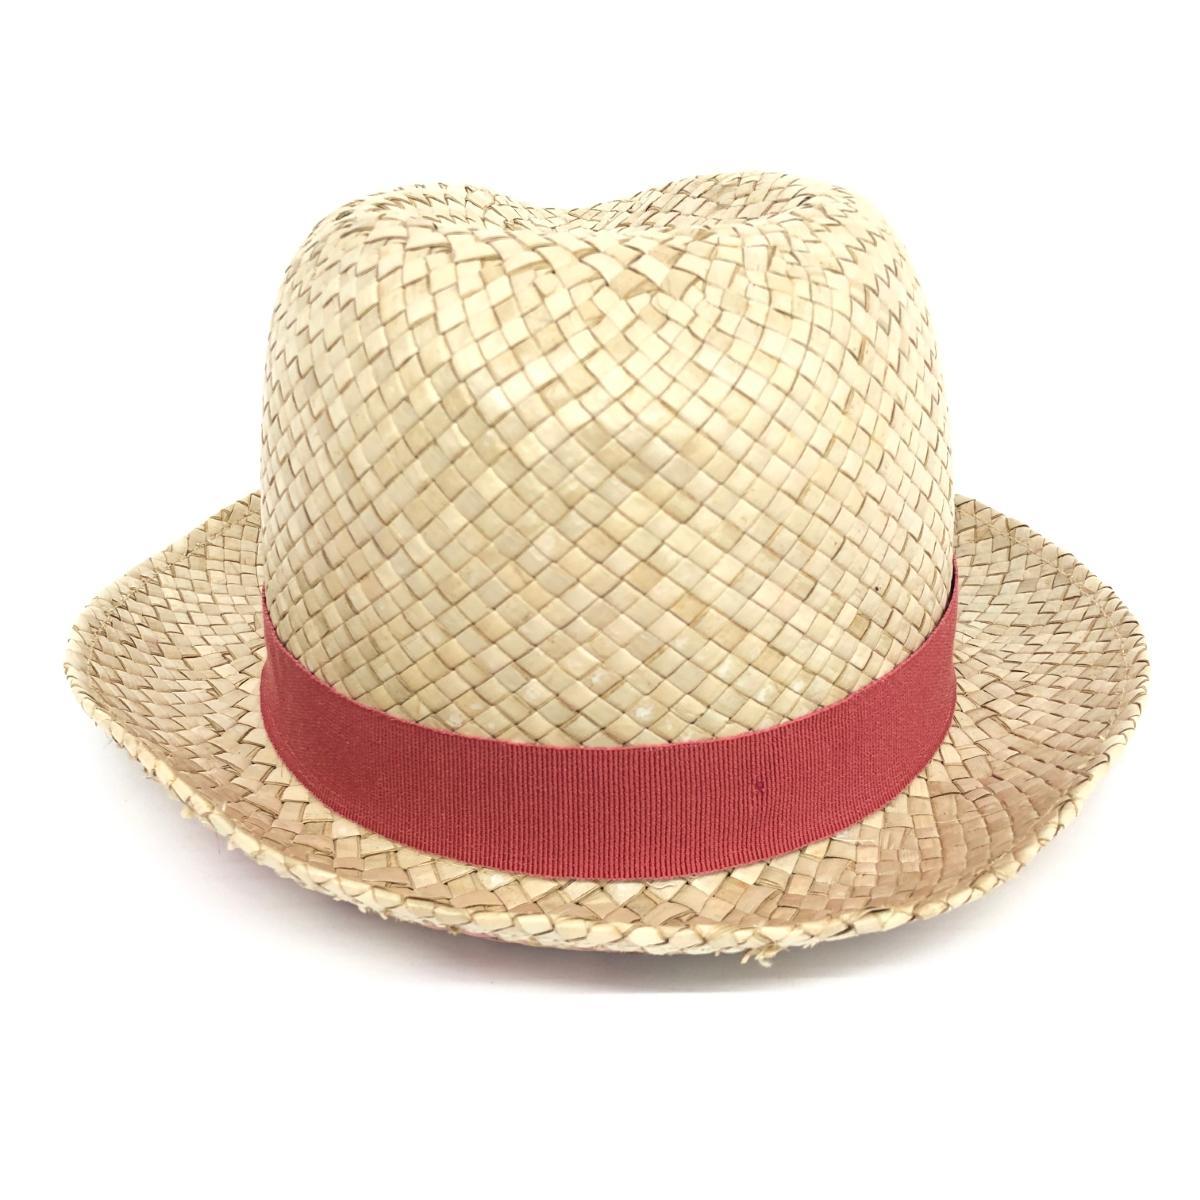 ◆Paul Smith collection ポールスミス　コレクション 麦わら帽子 ◆ ベージュ ユニセックス 帽子 ハット hat 服飾小物_画像3